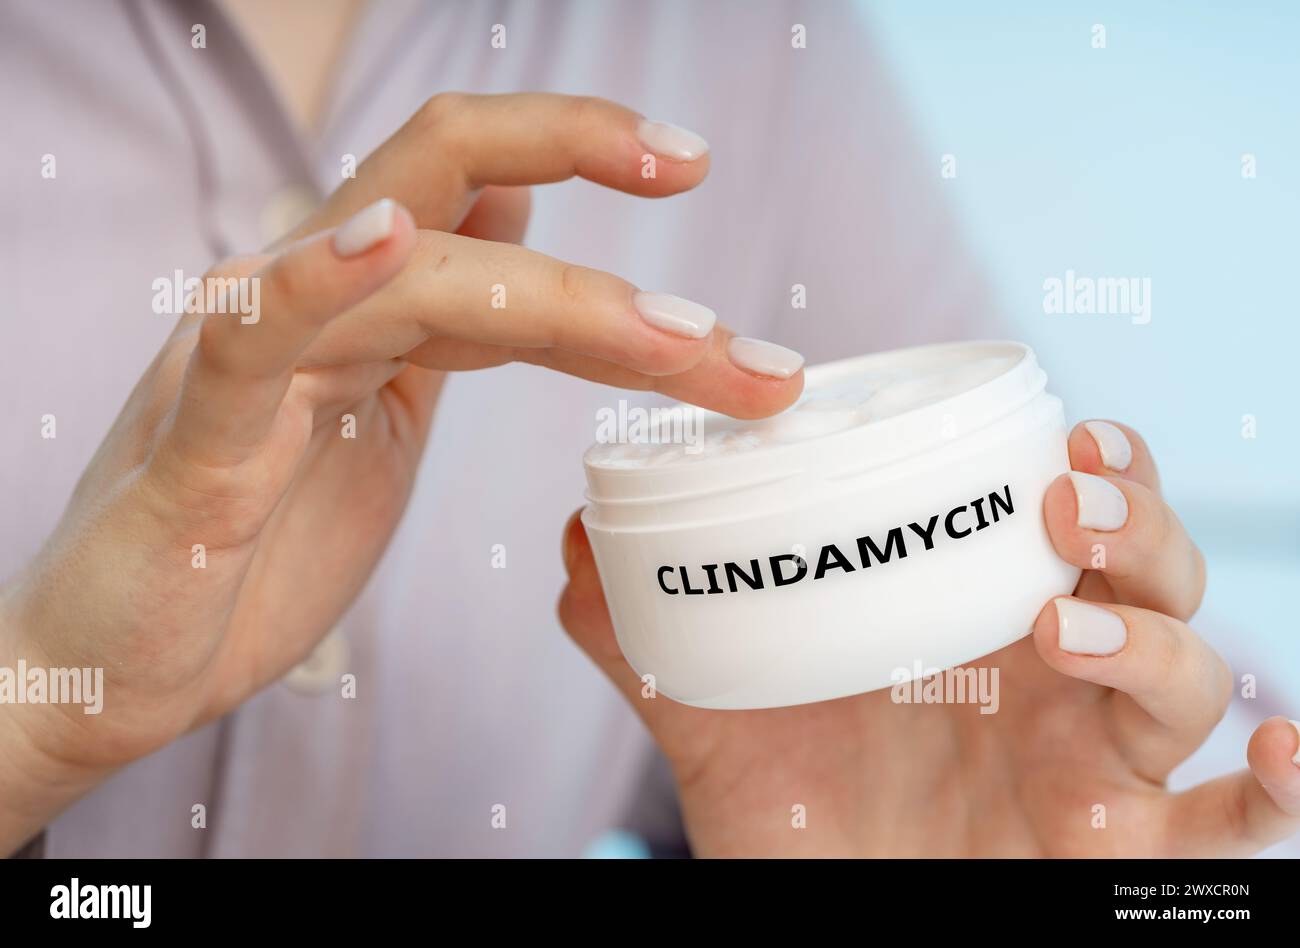 Clindamycin-medizinische Creme, konzeptuelles Bild. Eine antibiotische Creme zur Behandlung von Akne, indem Bakterien auf der Haut abgetötet und Entzündungen reduziert werden. Stockfoto